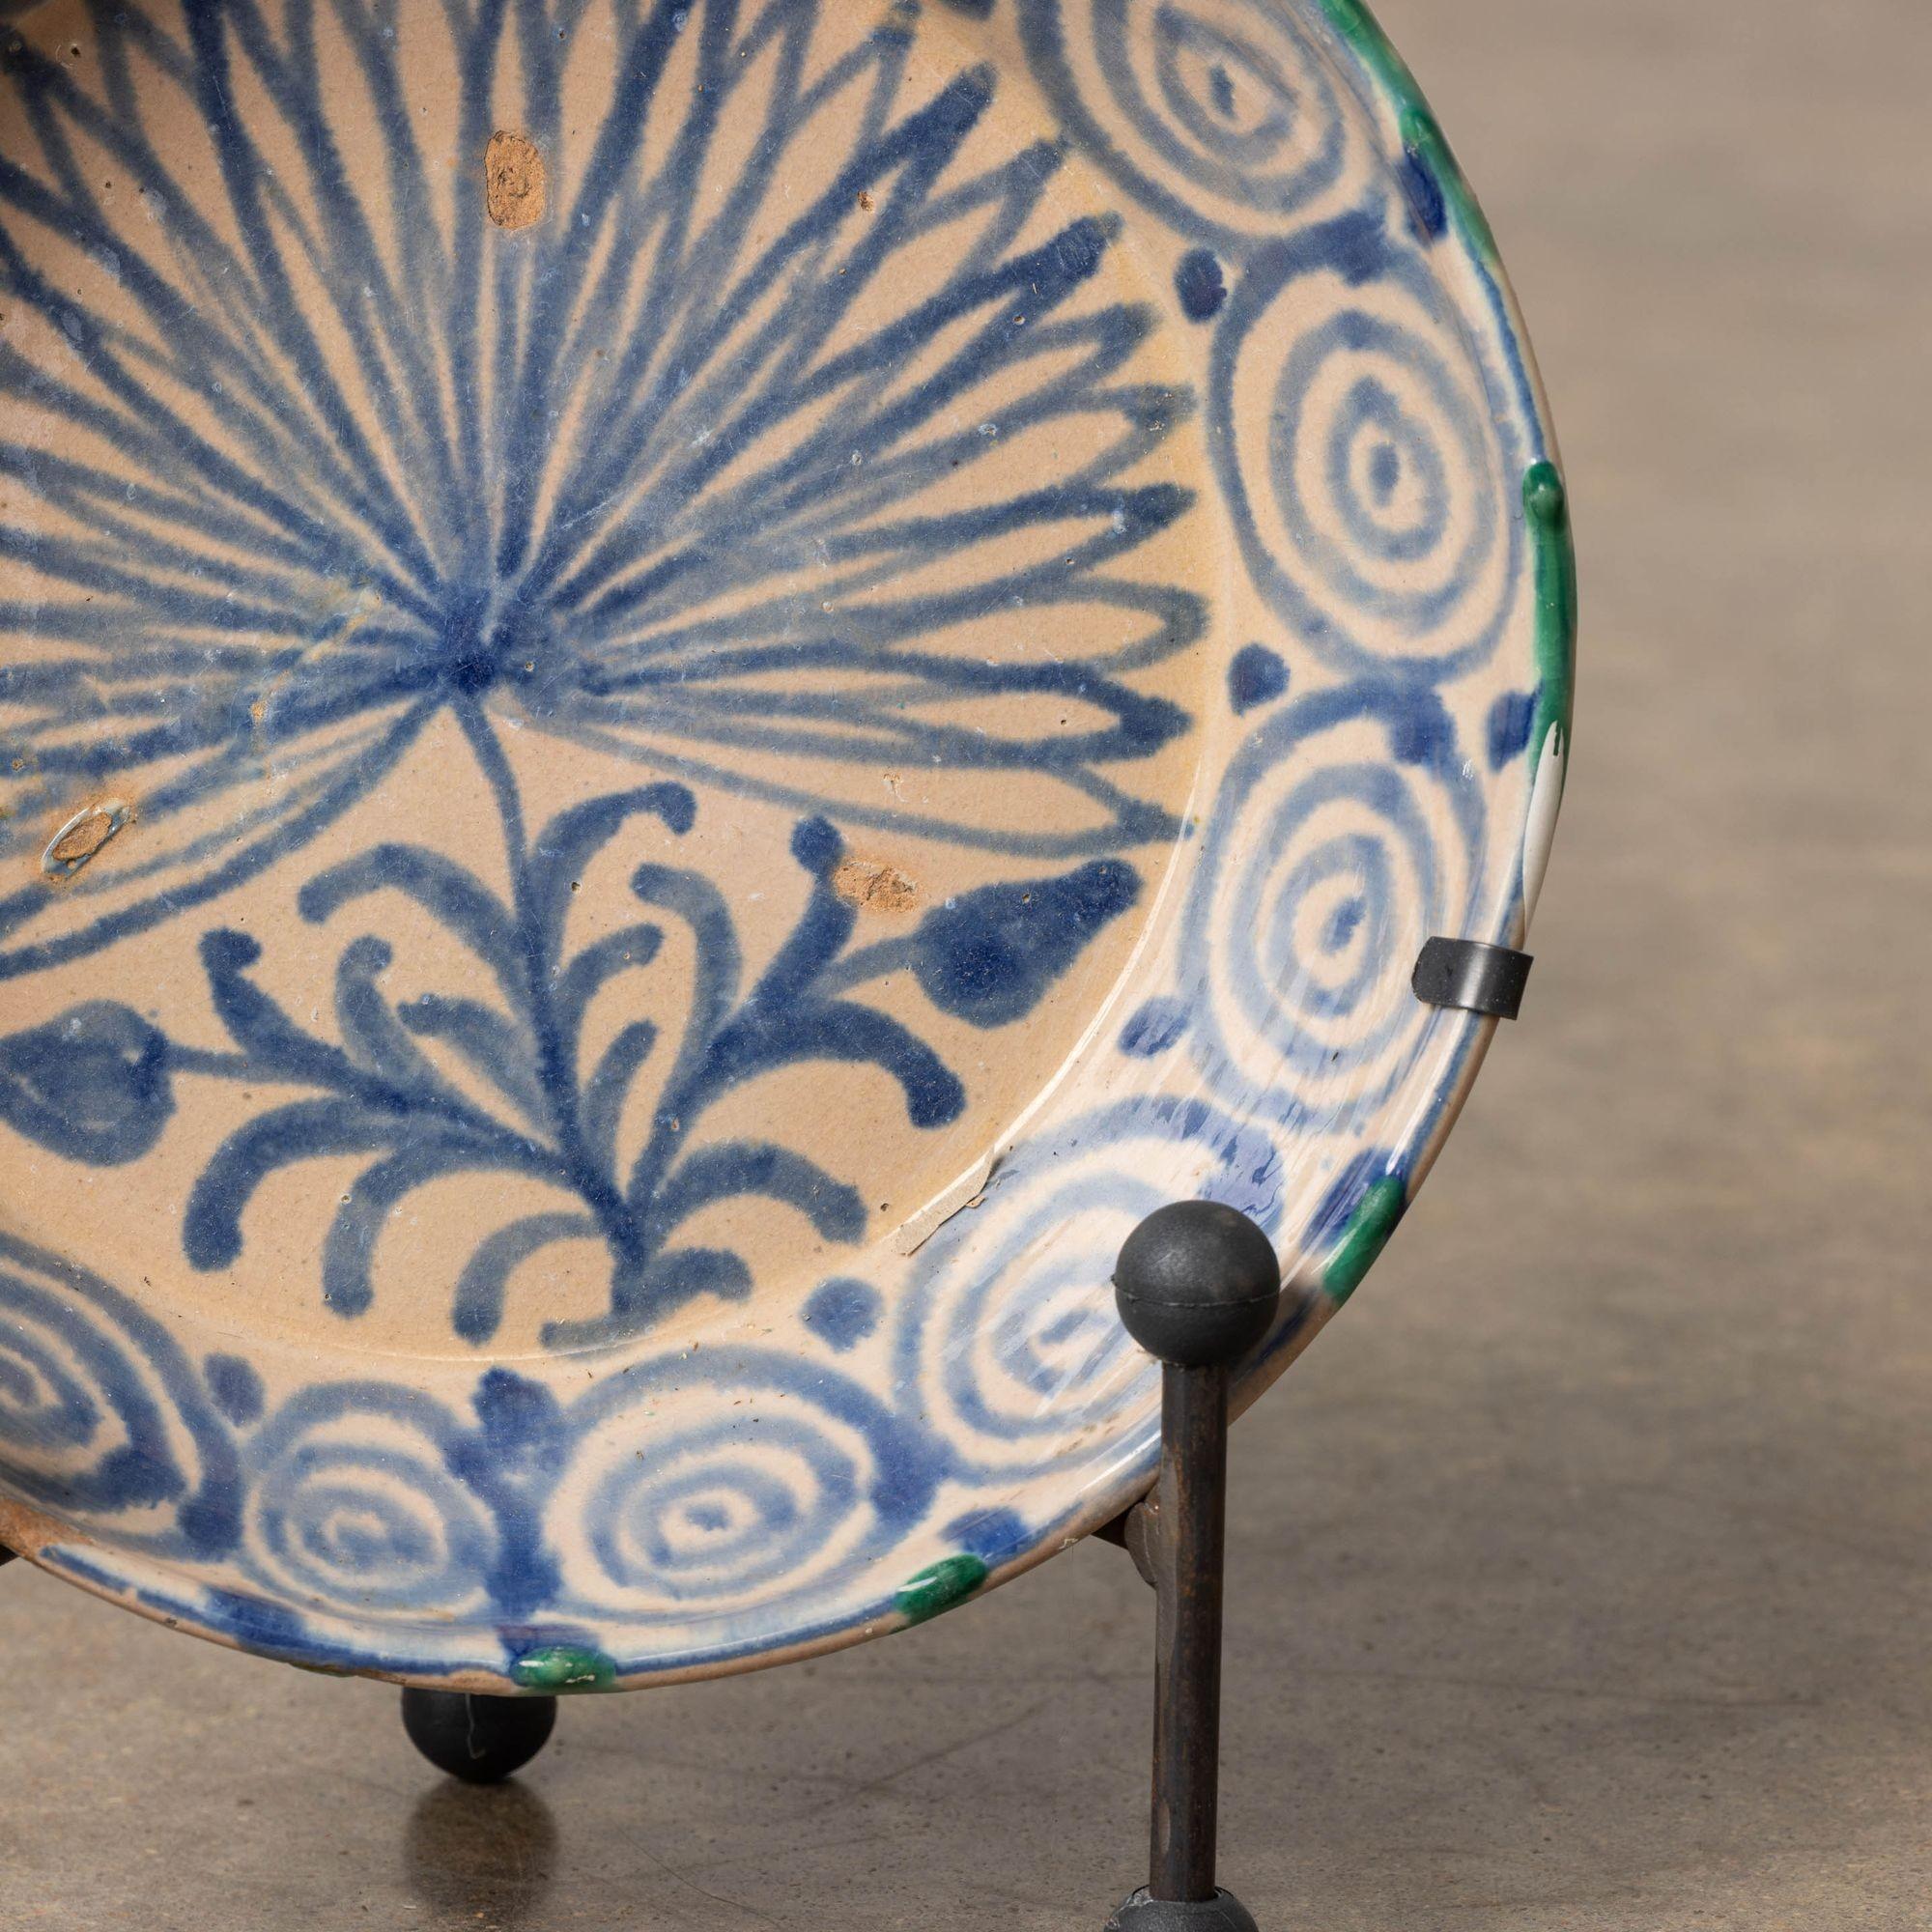 19th c. Spanish Blue and White Fajalauza Lebrillo Bowl from Granada For Sale 1